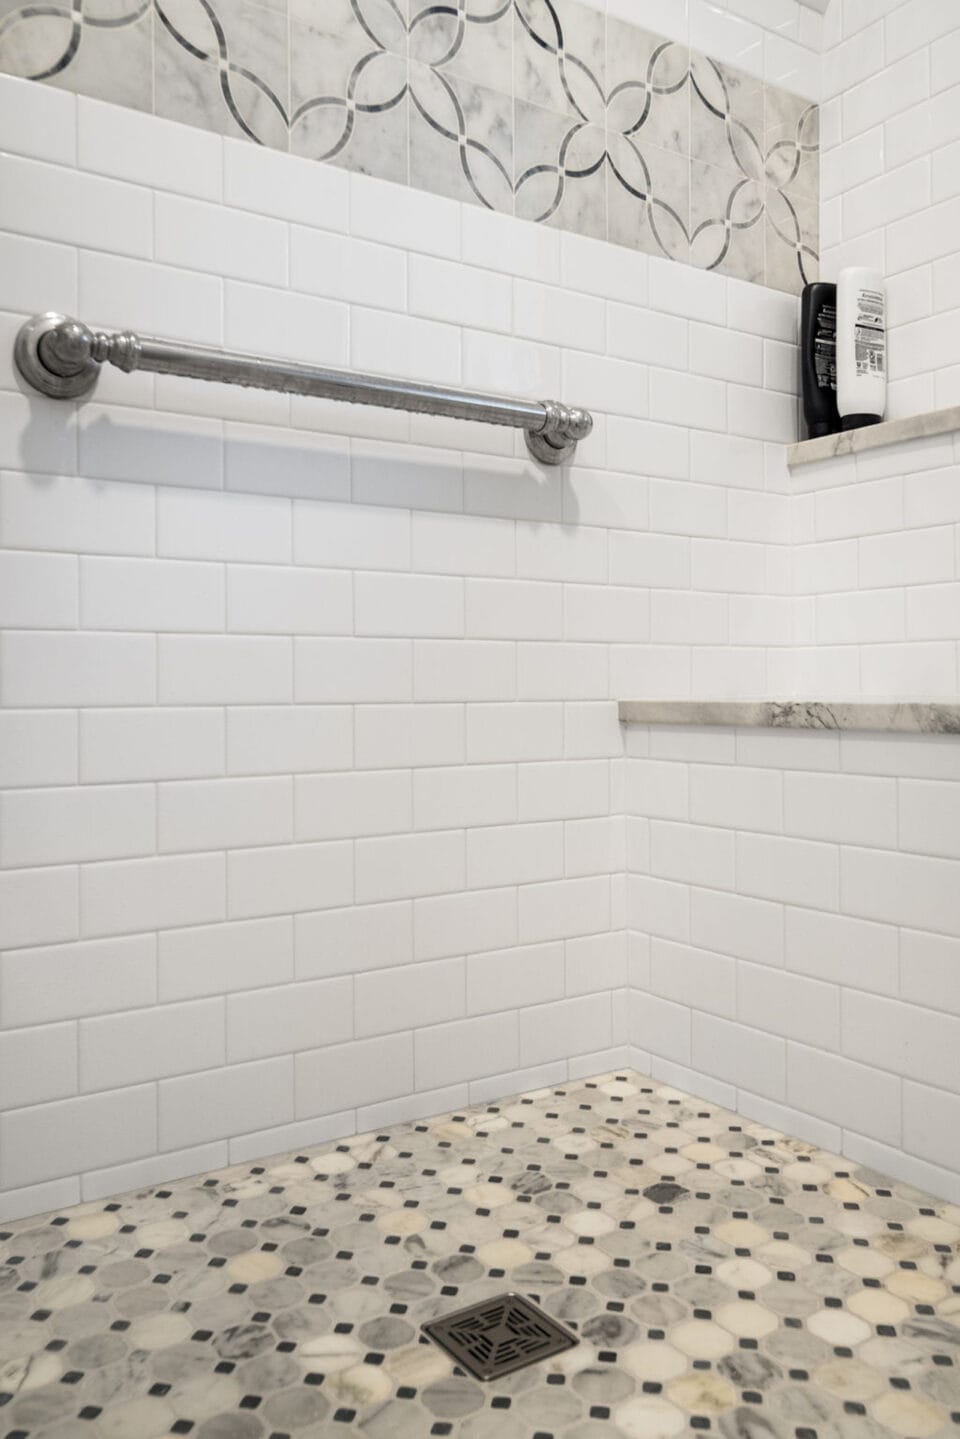 Grab bar in tile shower